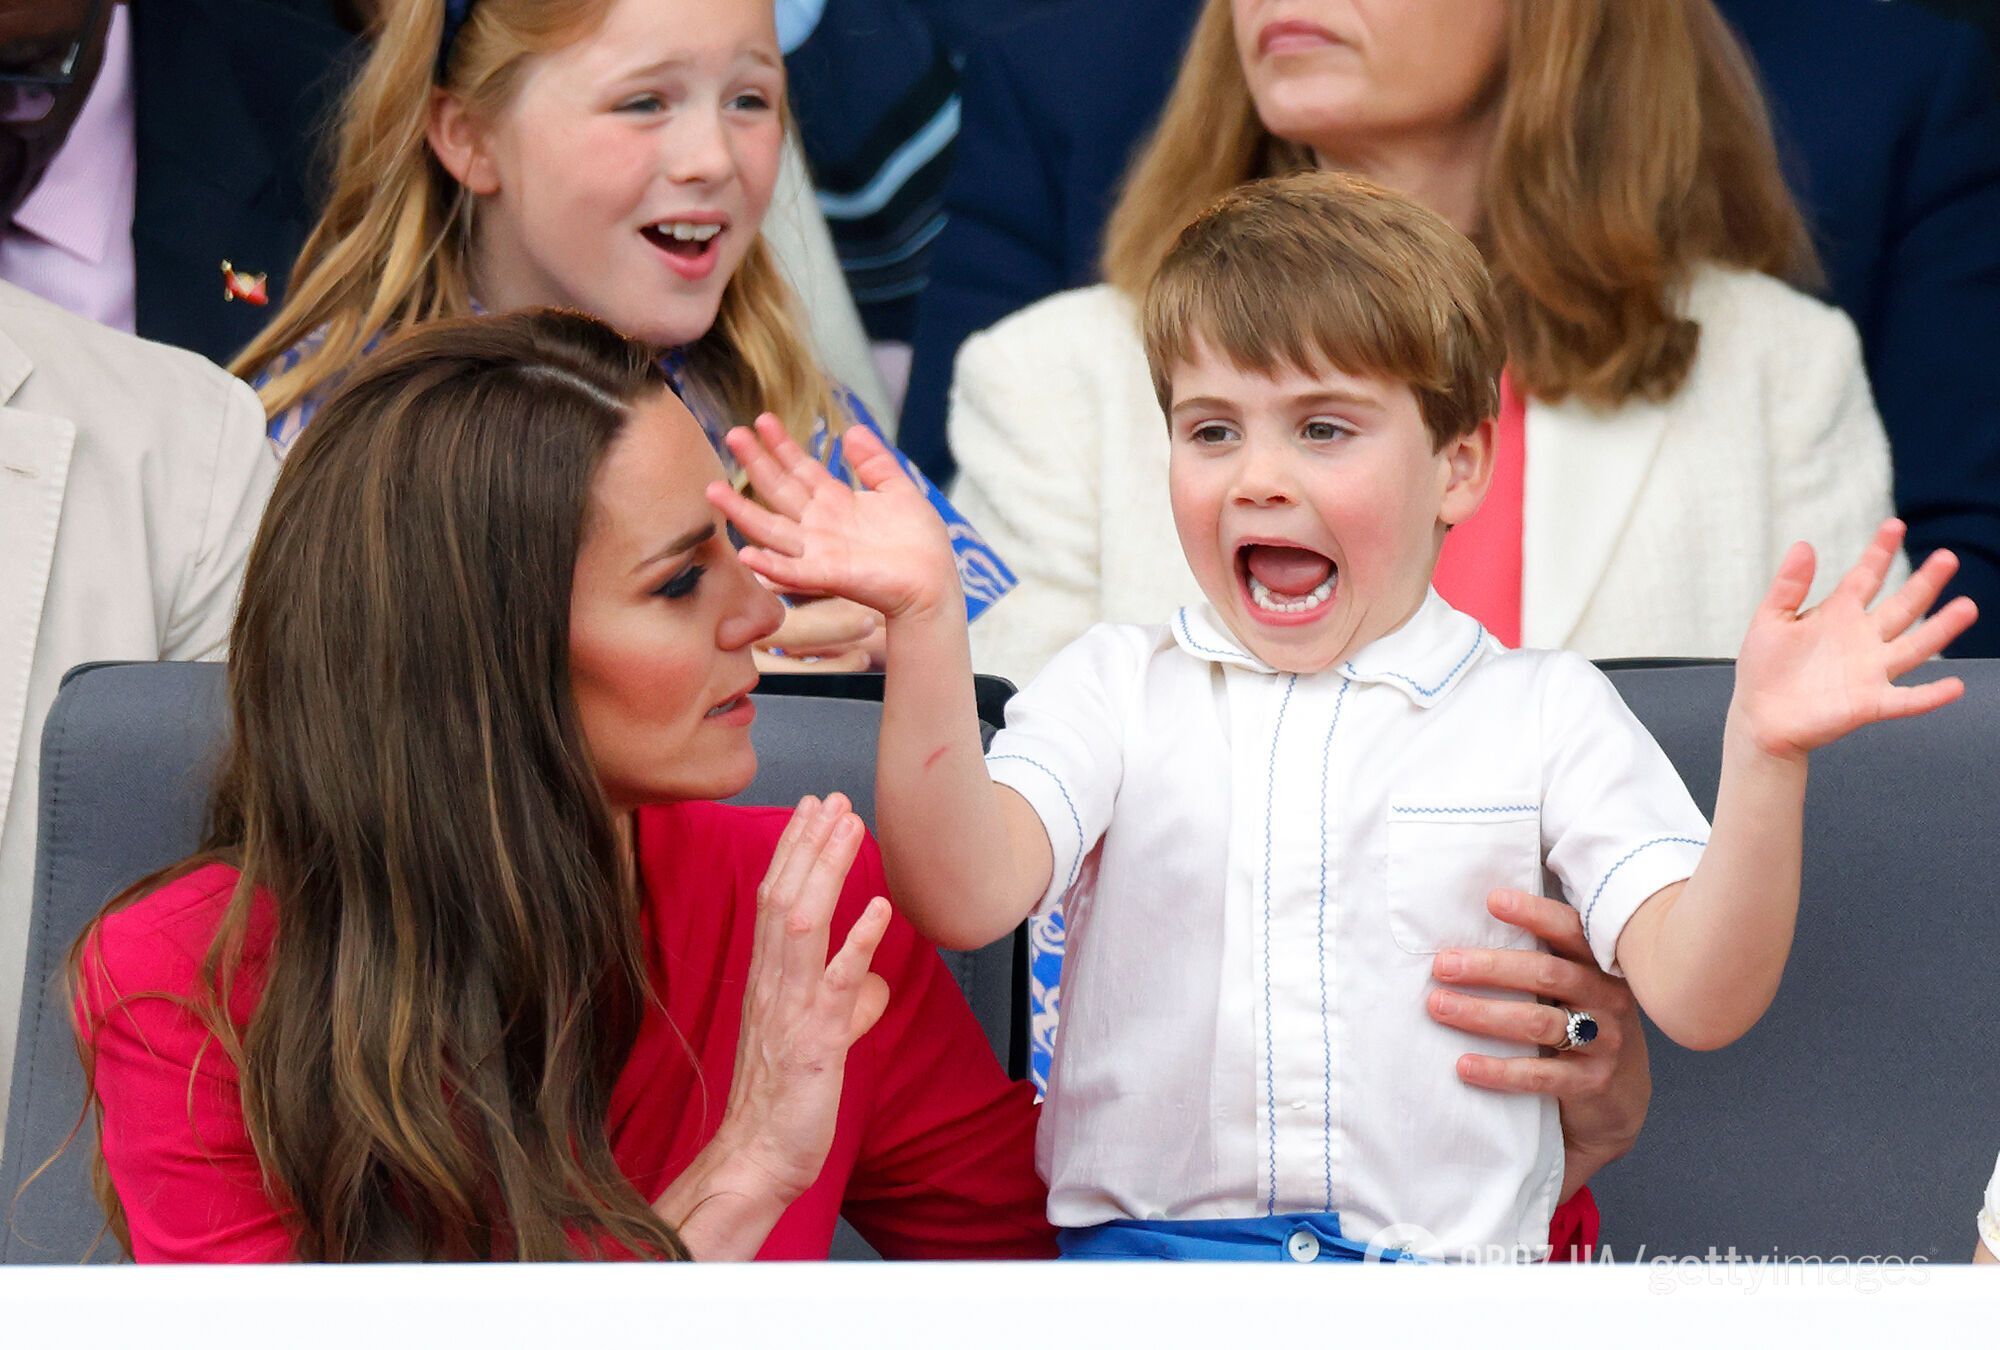 Королівський експерт назвав дві причини, чому Кейт Міддлтон показала фото принца-іменинника Луї пізніше, ніж зазвичай
